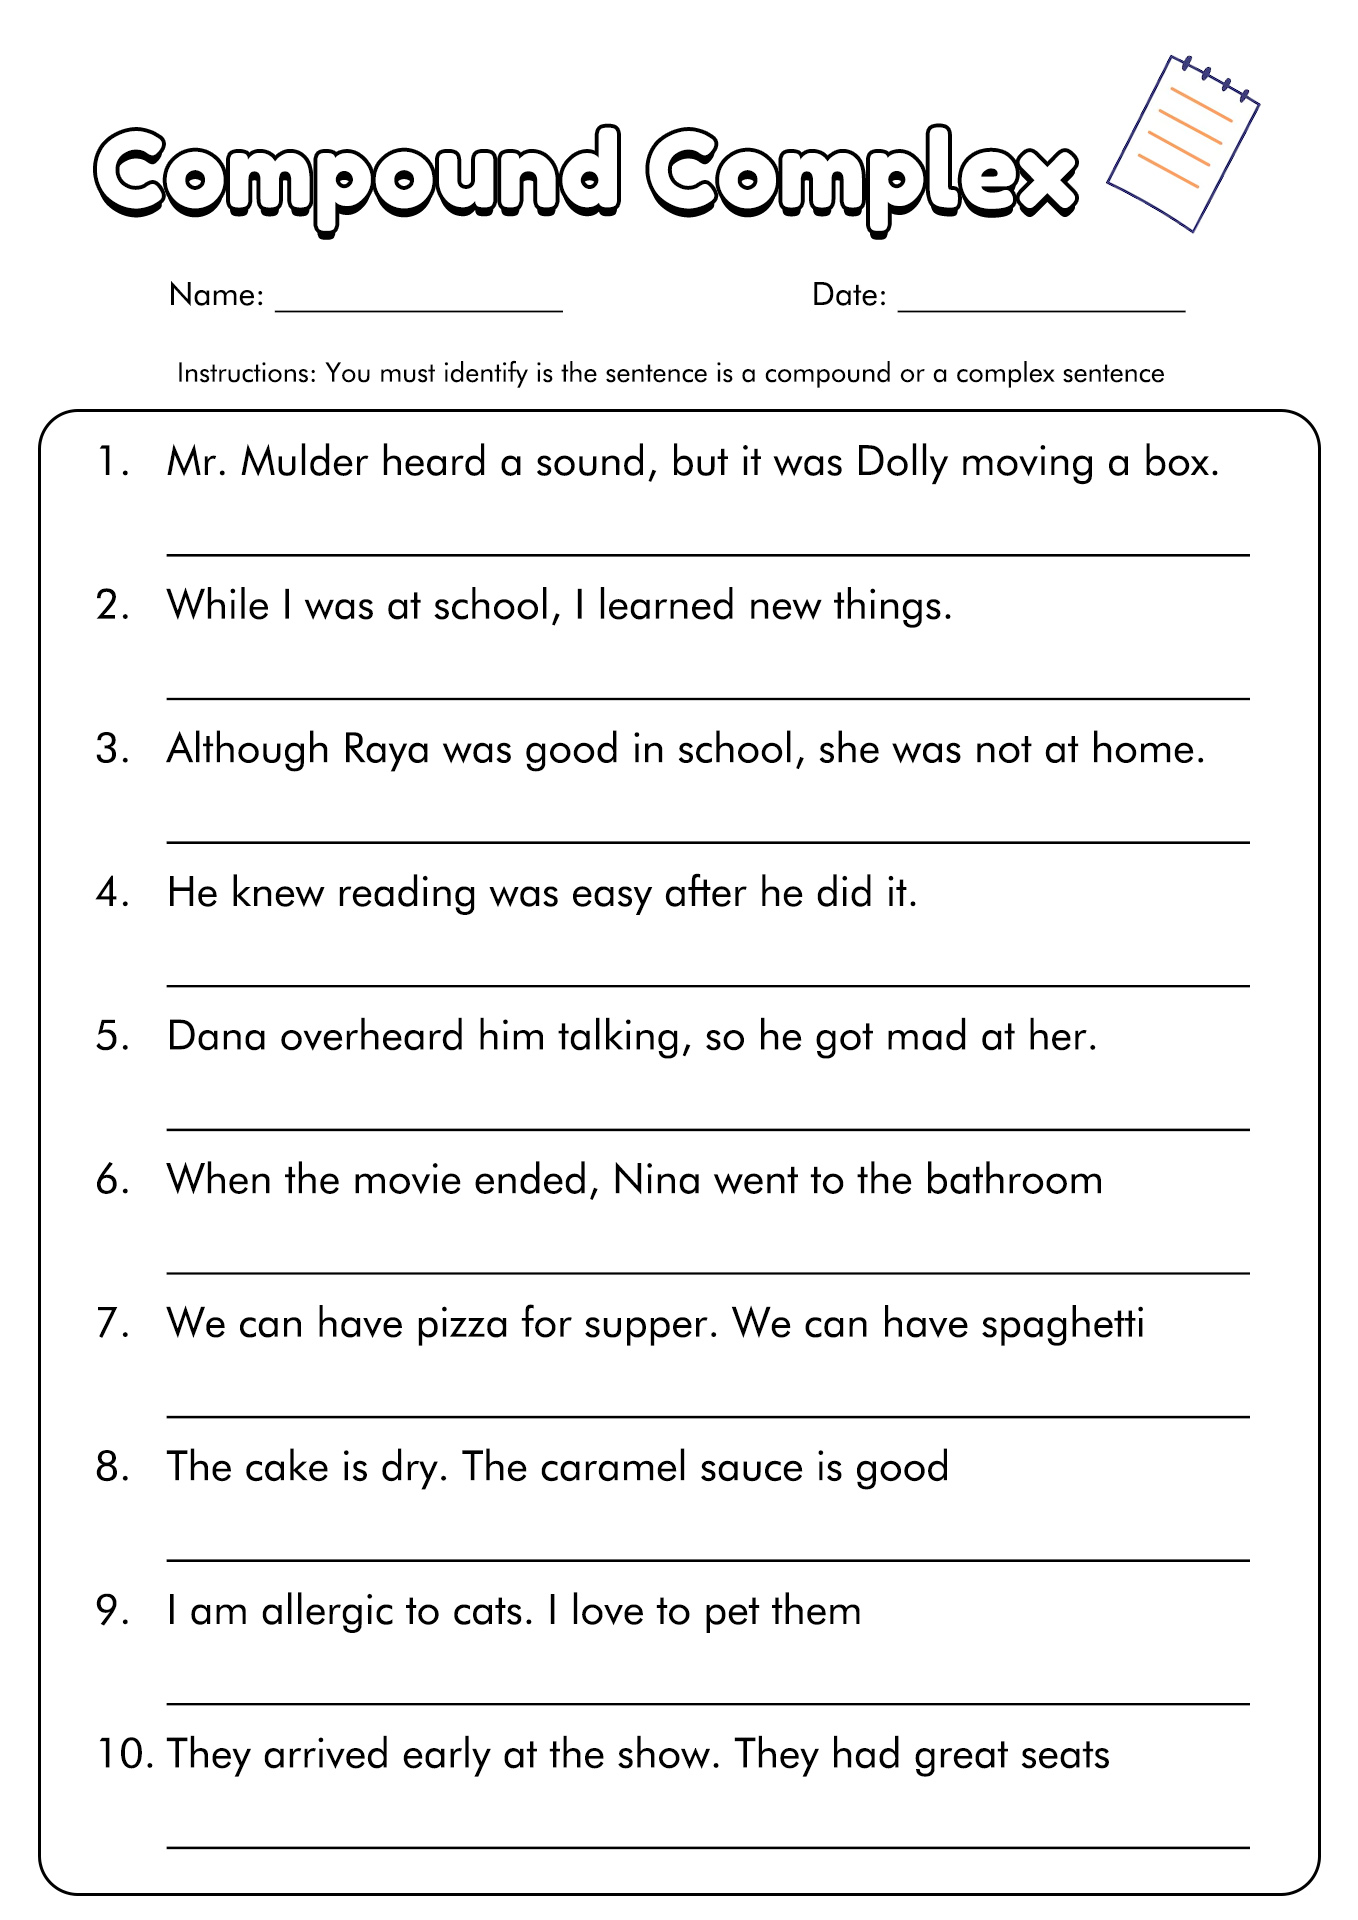 Simple Complex Compound Sentences Worksheet Answers